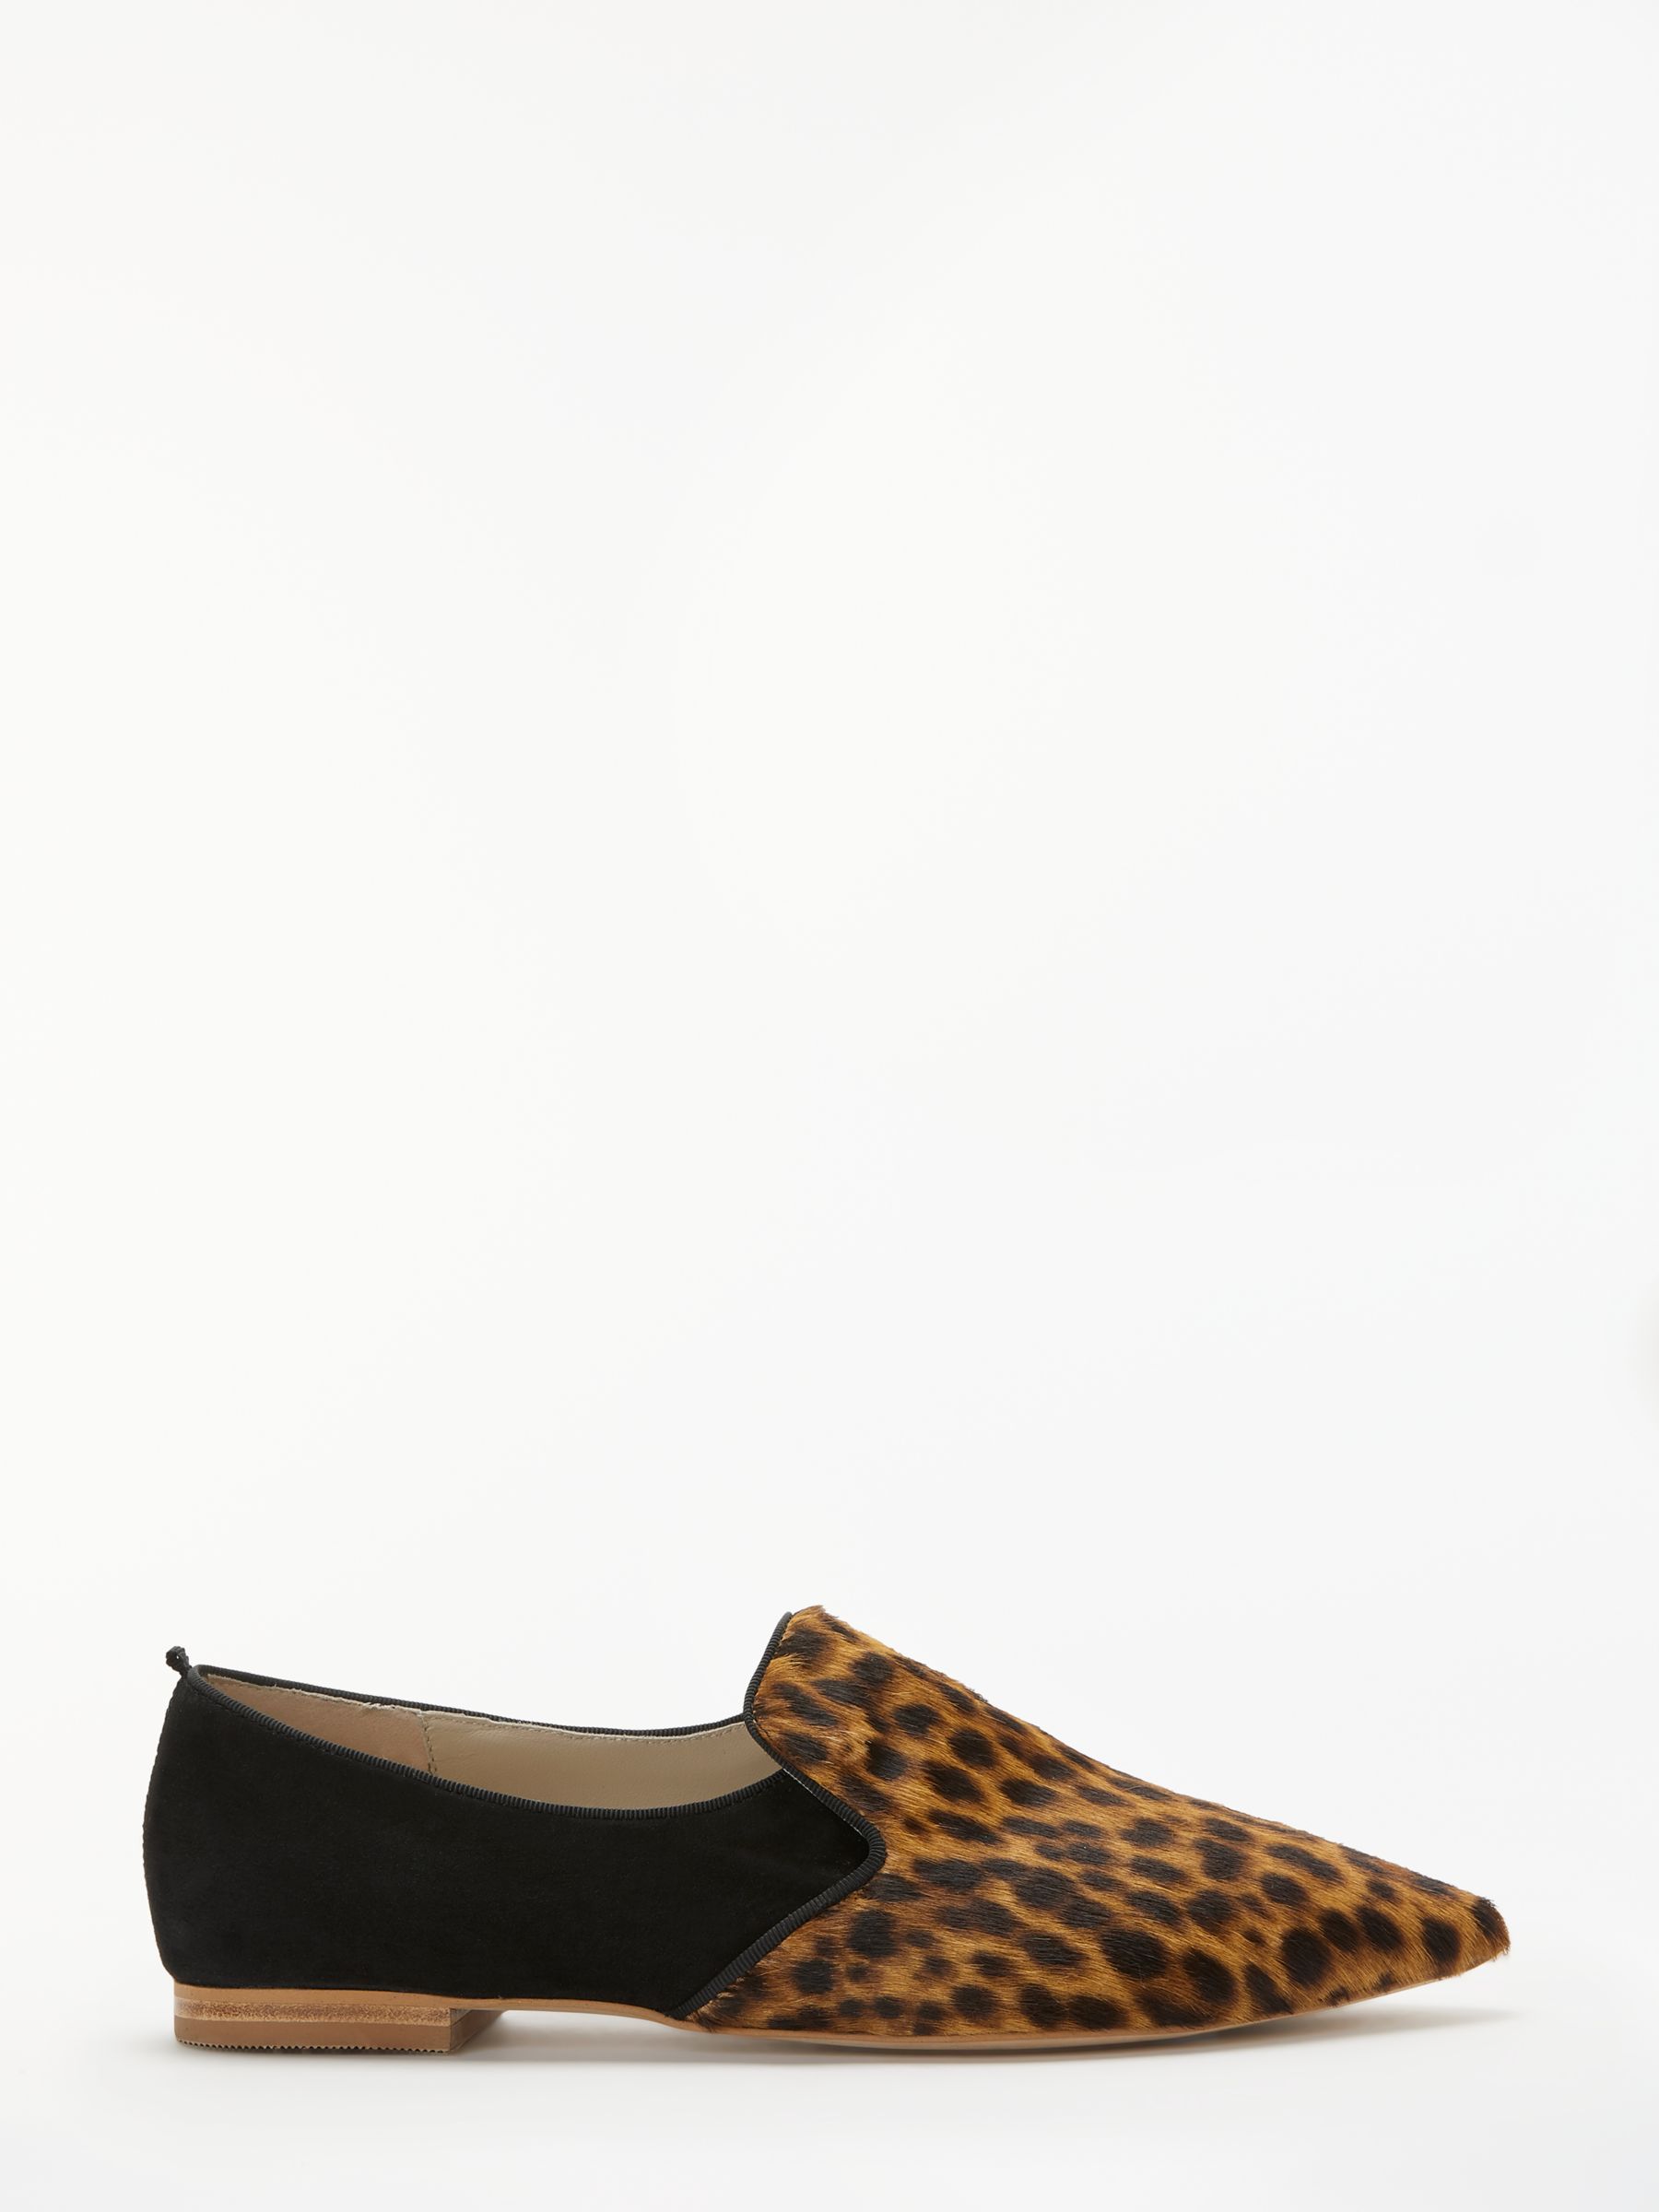 Boden Rosie Slipper Loafers, Tan Leopard